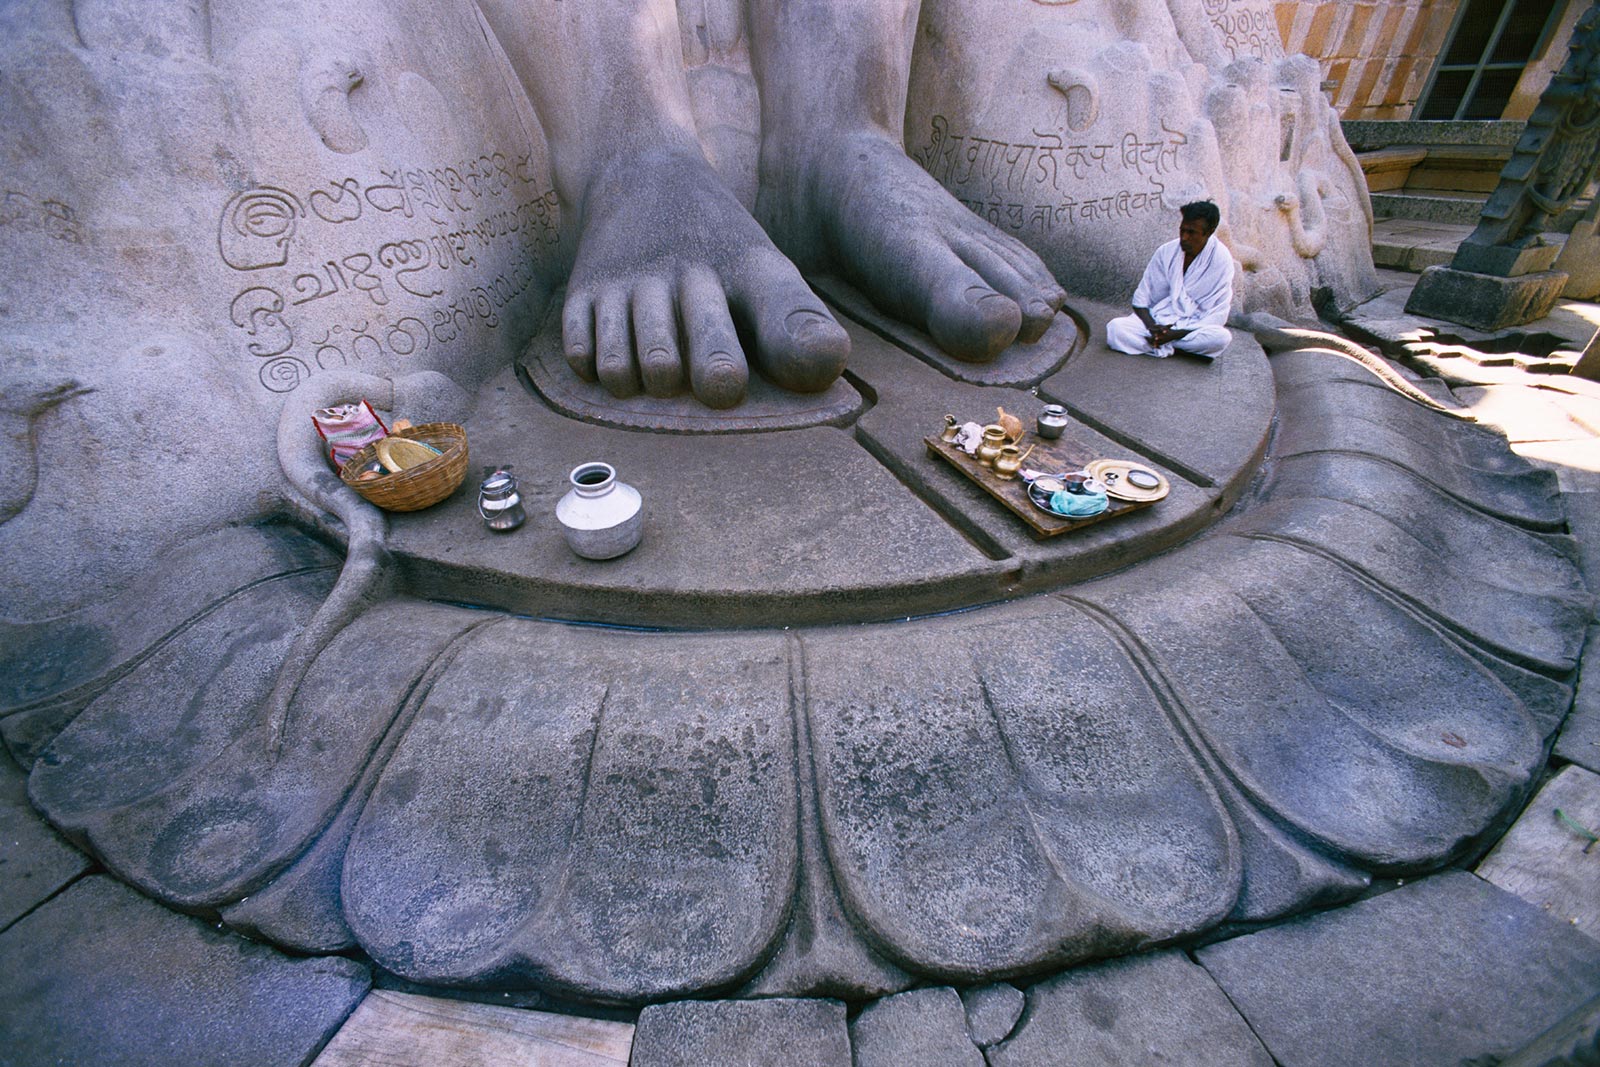 श्री गोमथेश्वर प्रतिमा के पवित्र चरण, श्रवणबेलगोला, भारत